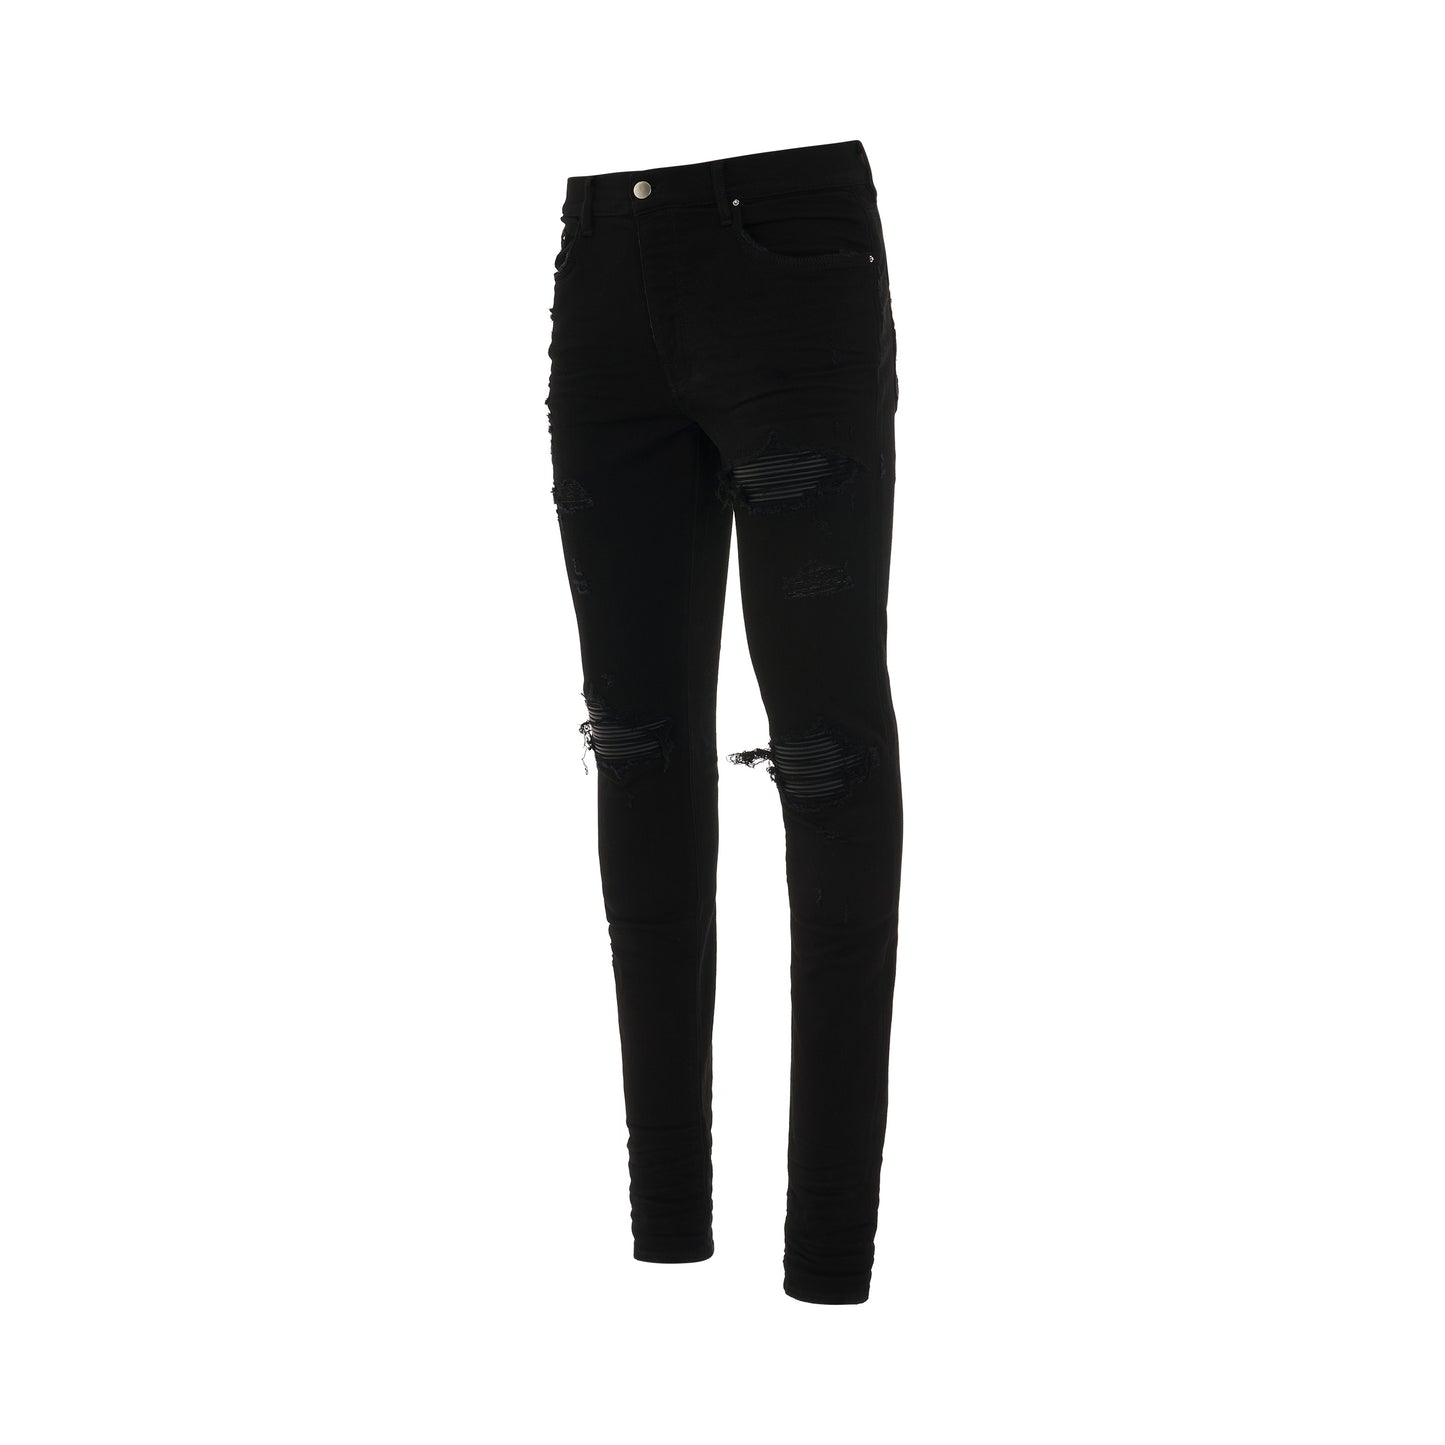 MX1 Jeans in Black